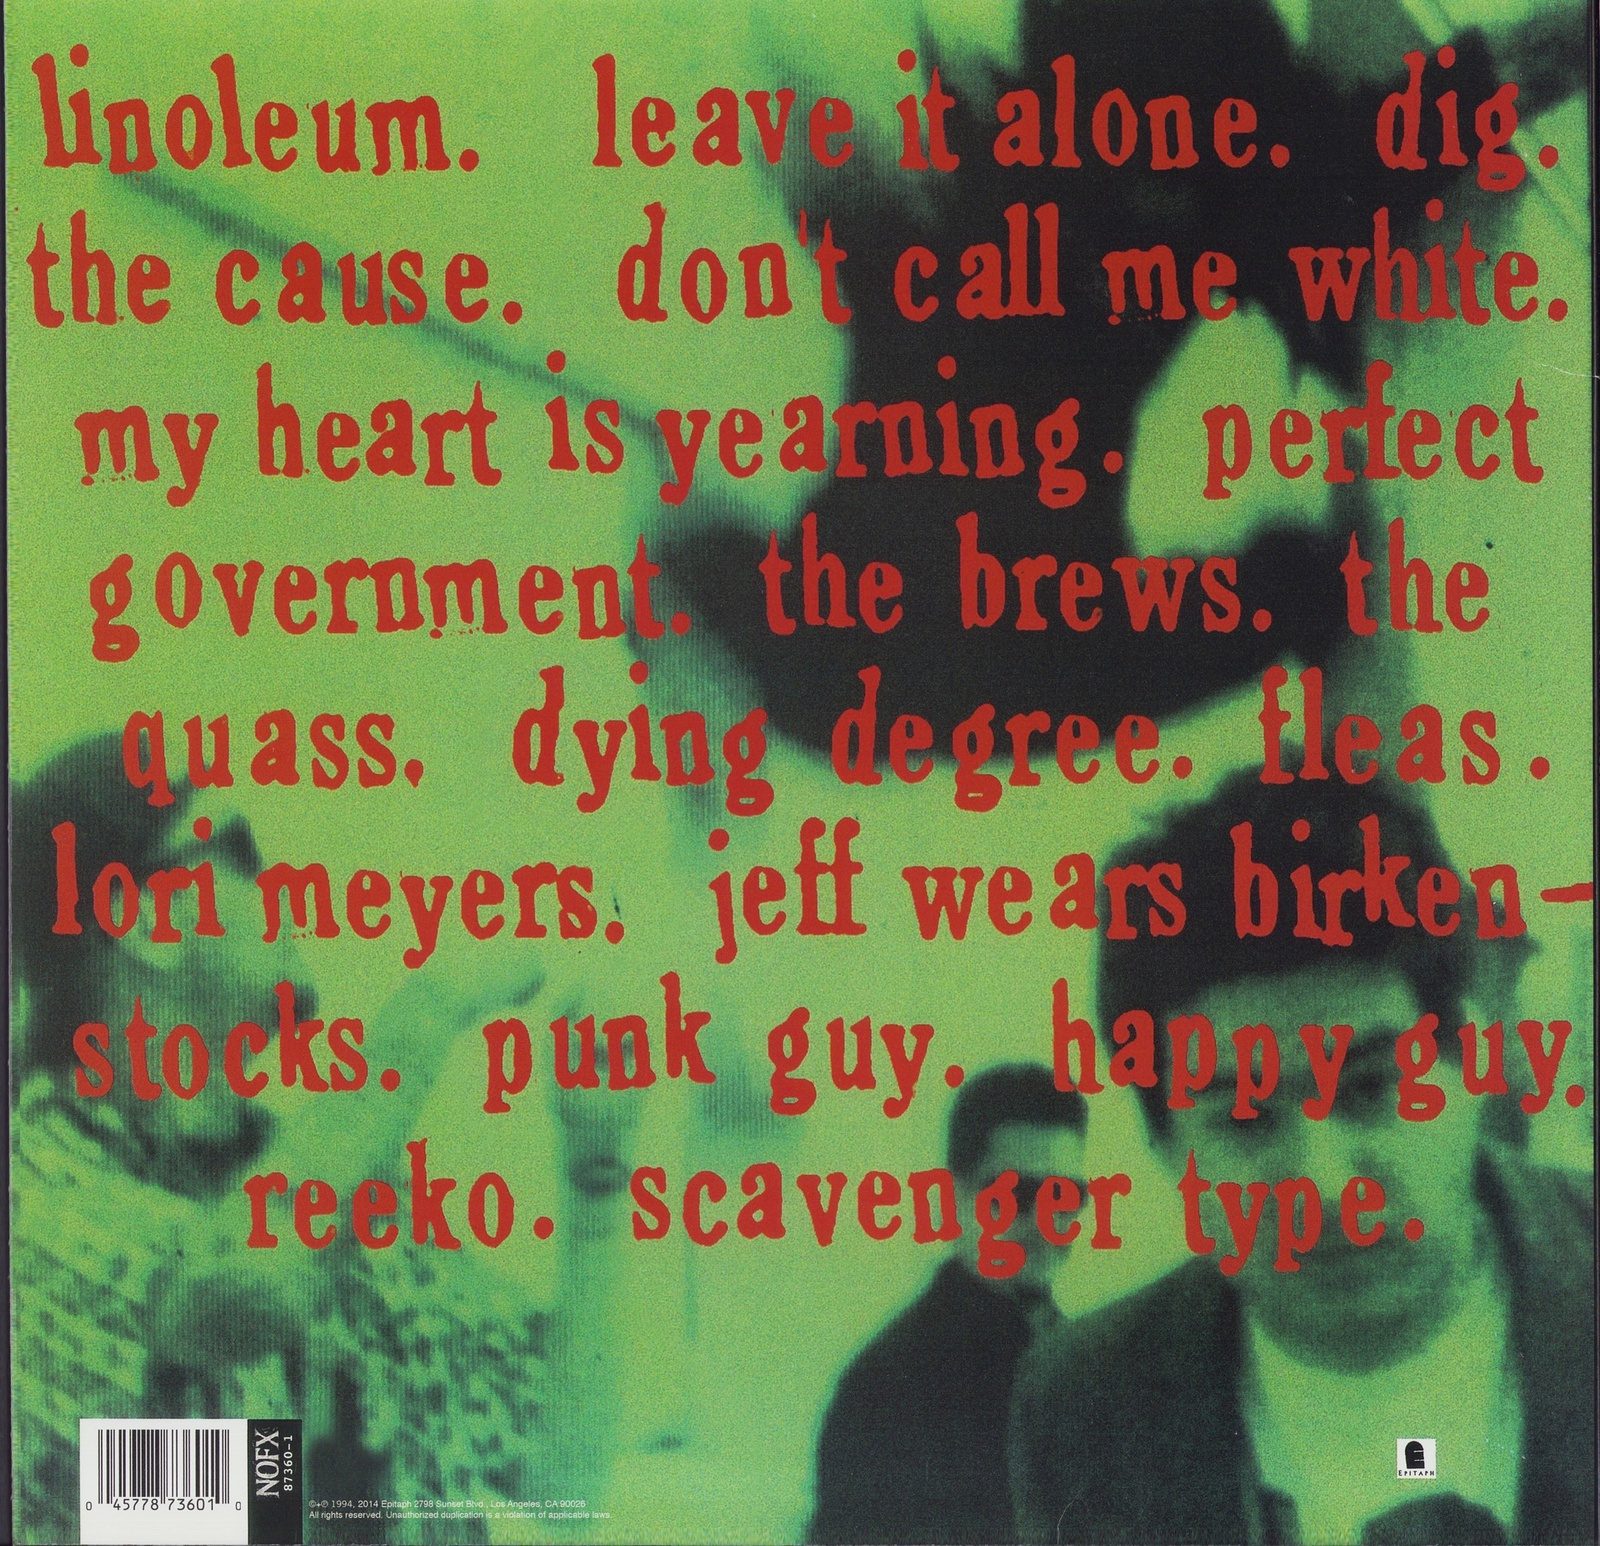 NOFX ‎- Punk In Drublic Vinyl LP